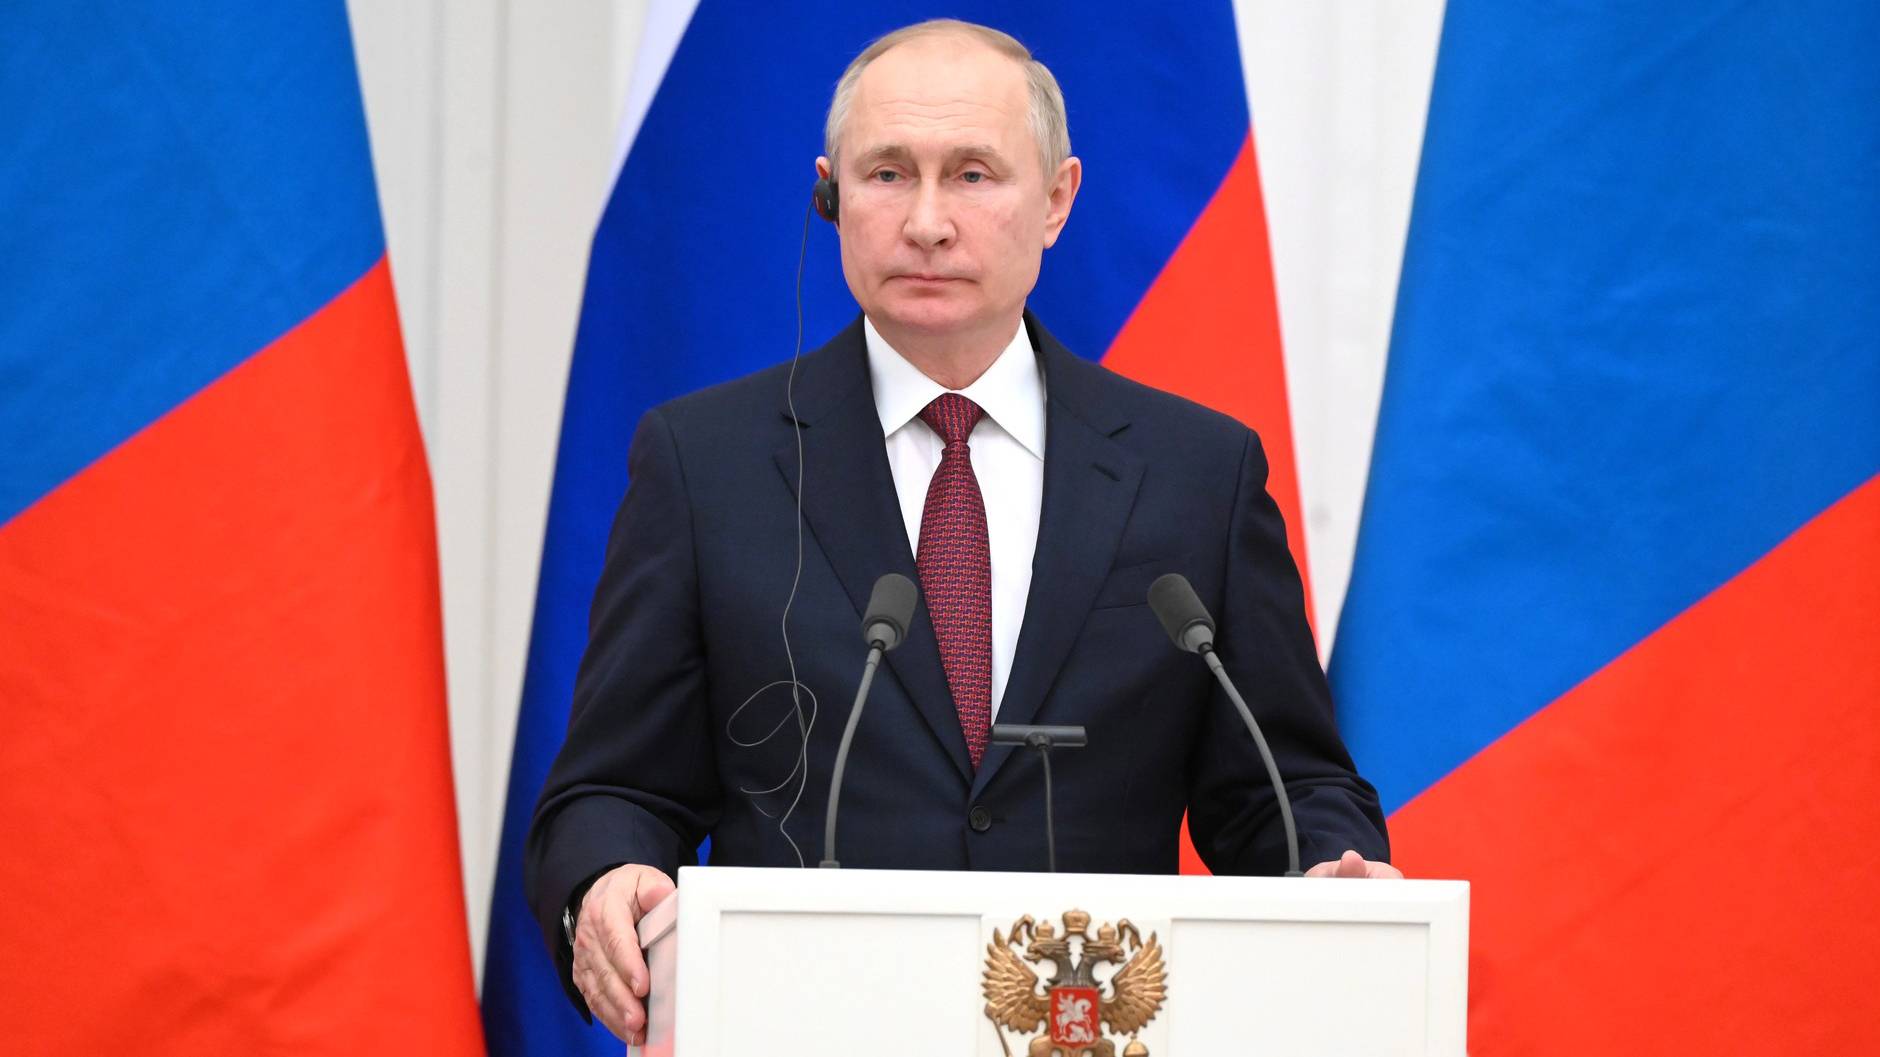 Welt: НАТО во время переговоров с Россией может оказаться в ловушке Путина